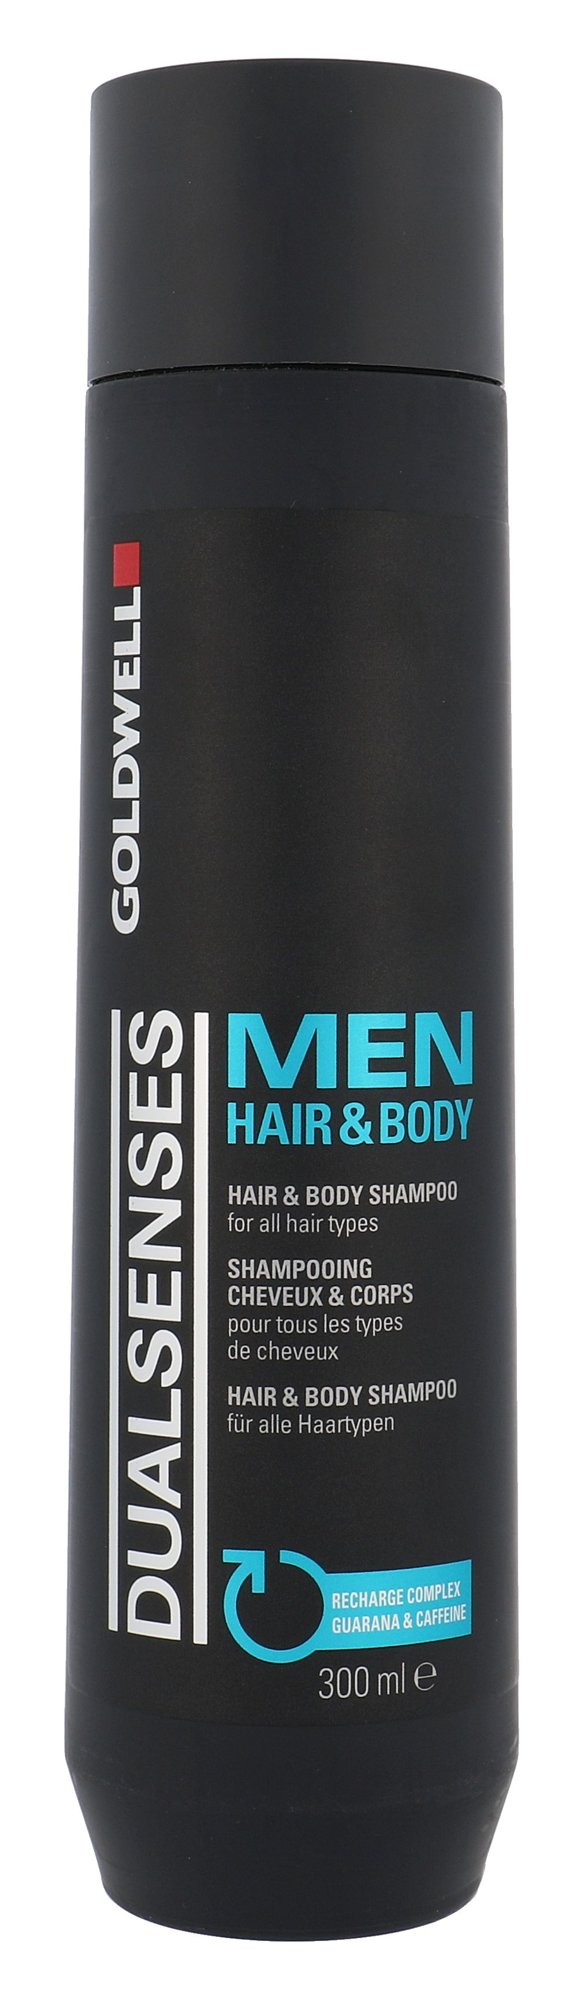 Goldwell Dualsenses For Men Hair & Body Shampoo All Hair